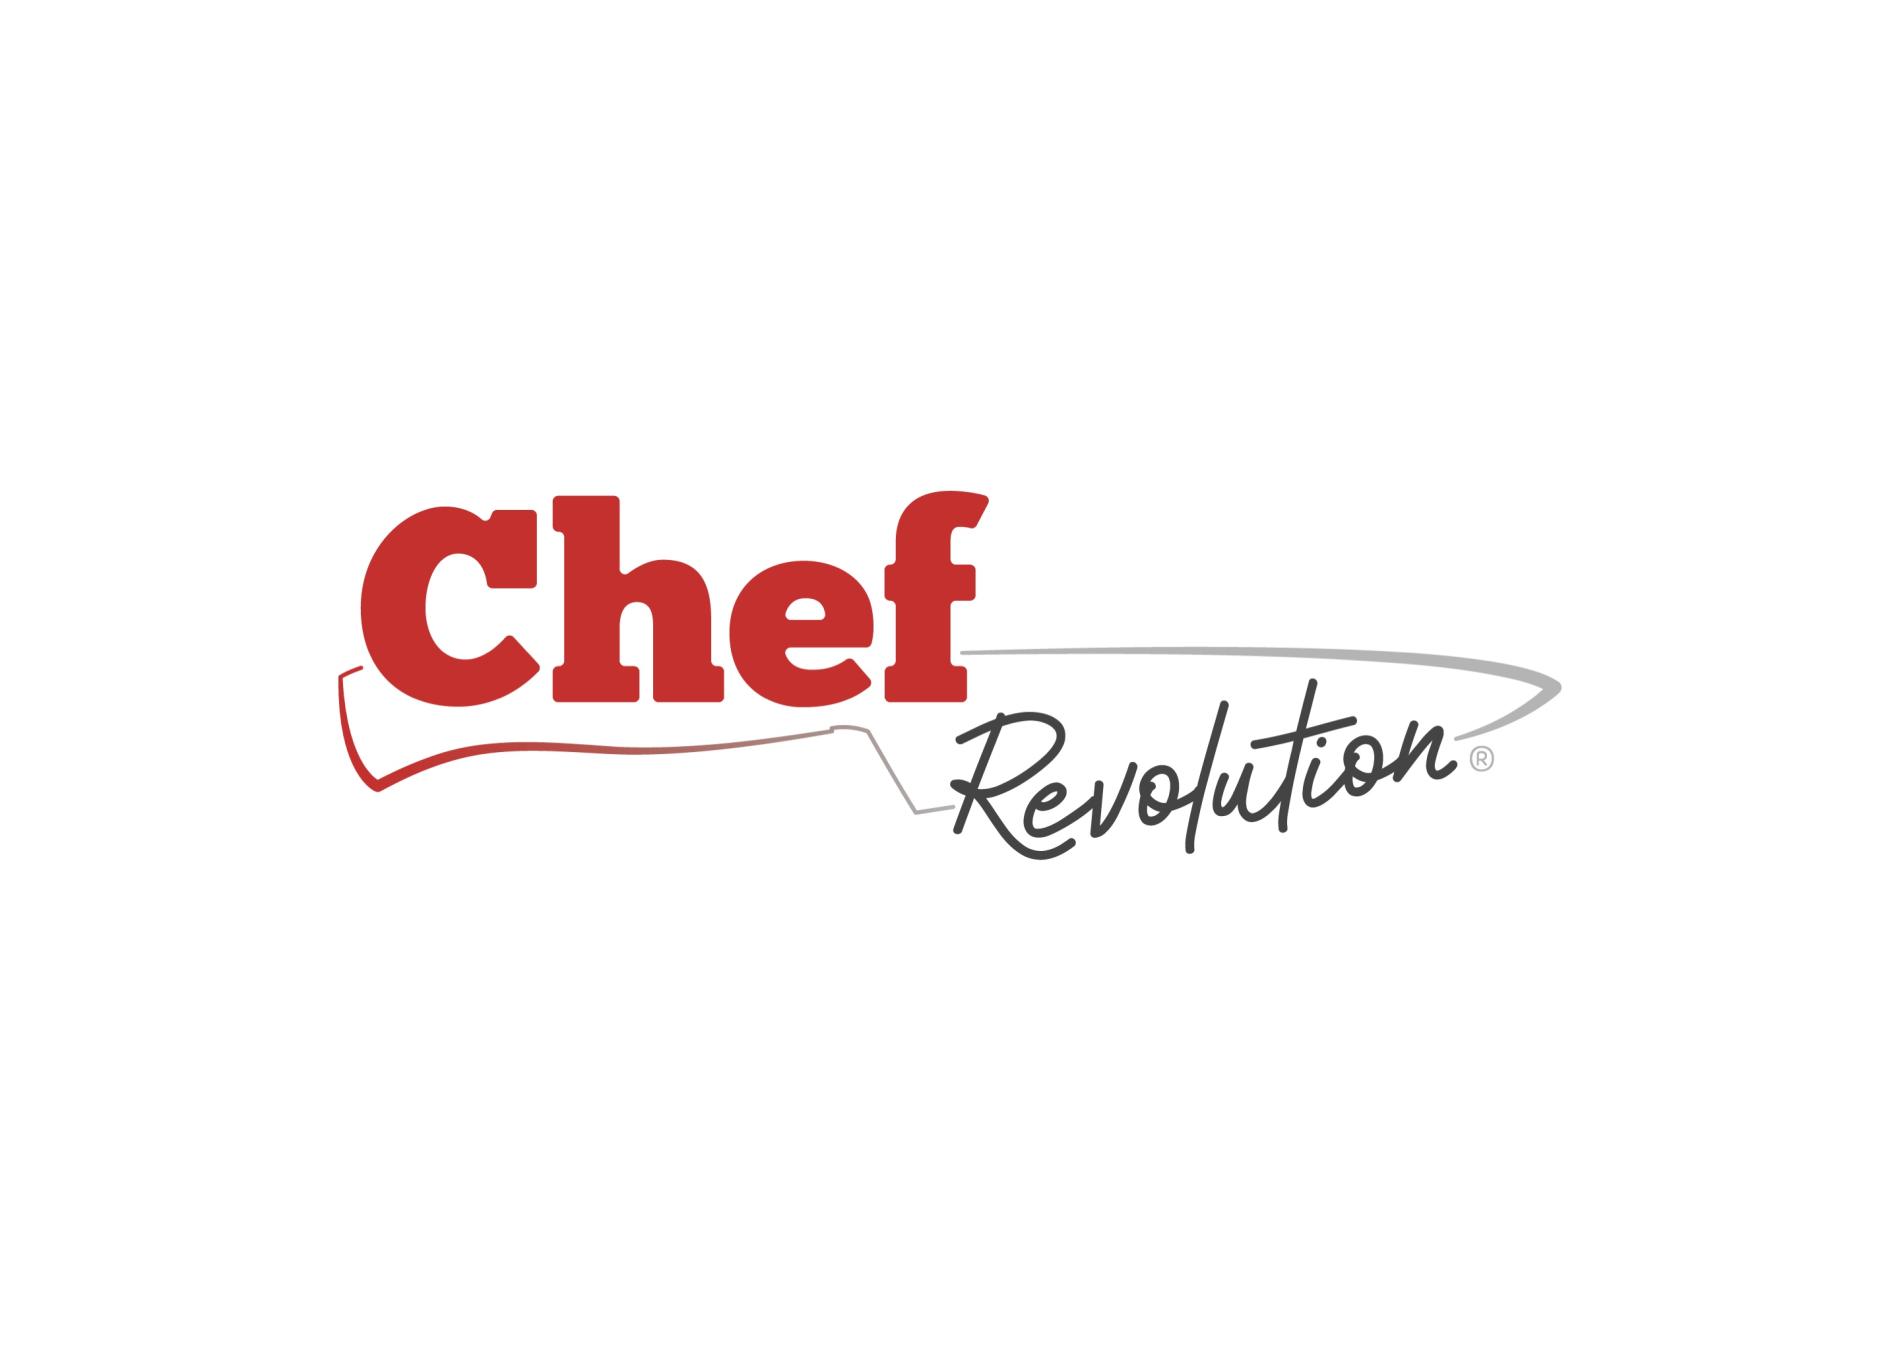 Noticia sobre Diseño de logo (rediseño) - Chef Revolutions